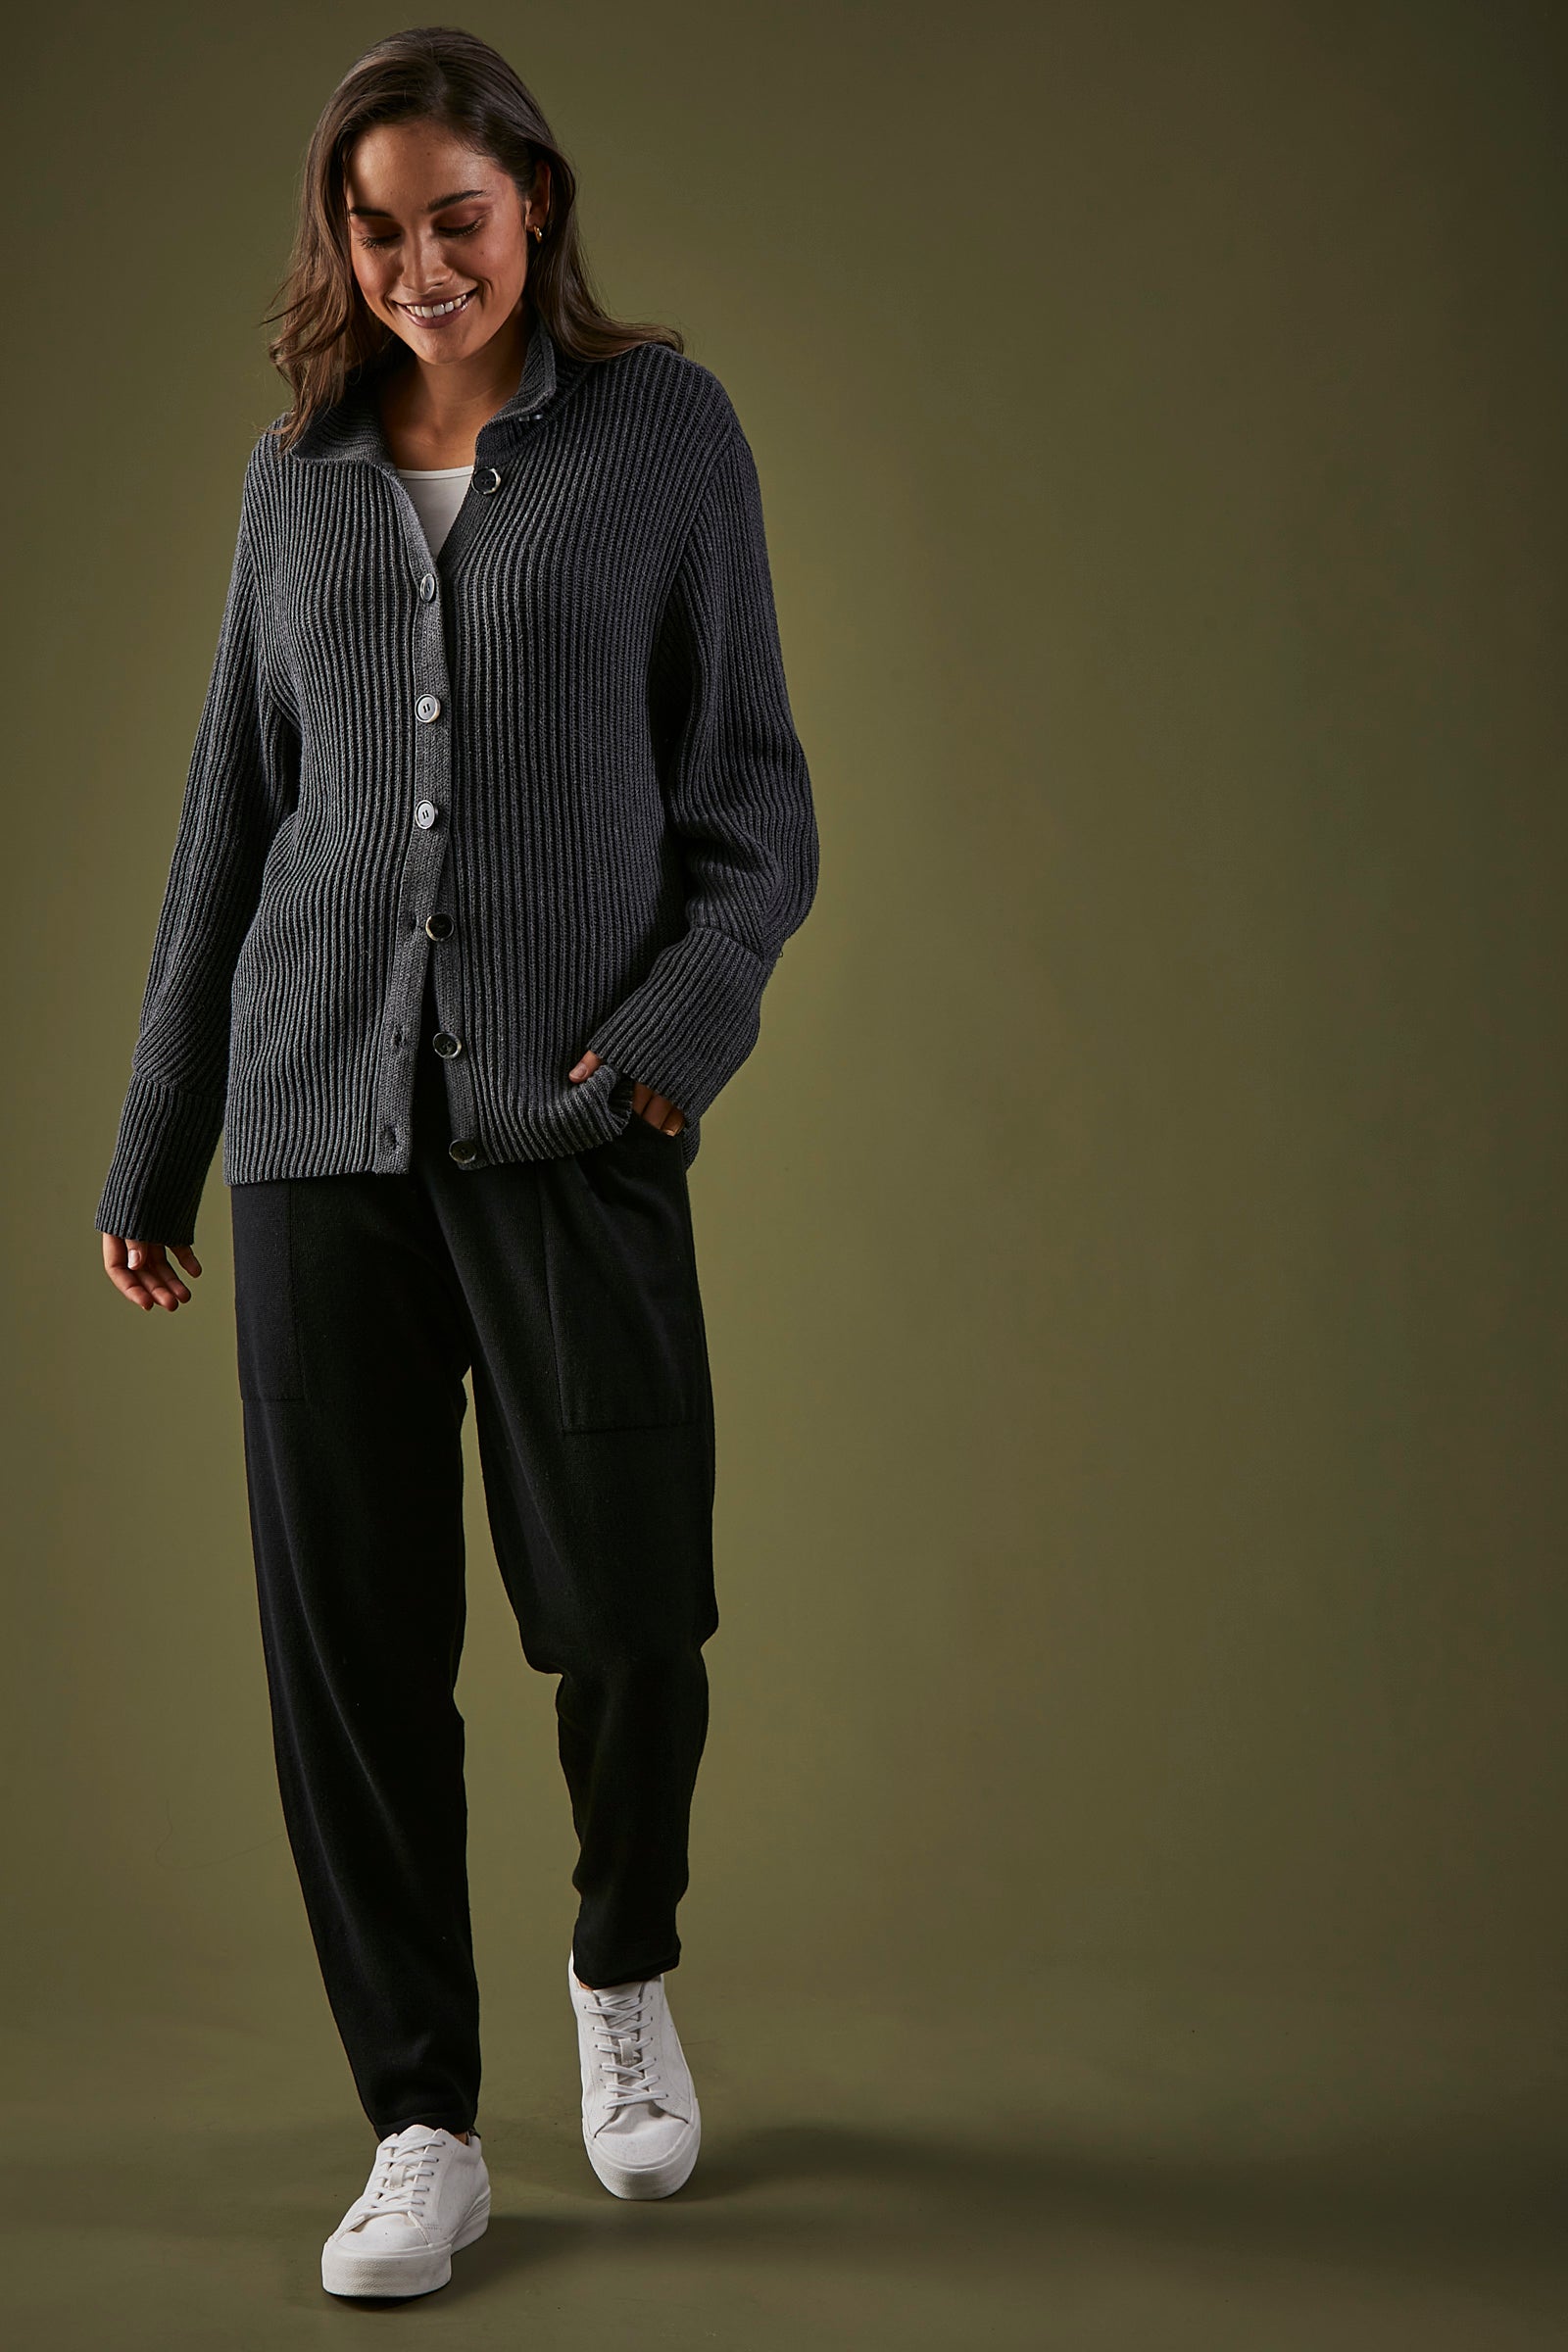 Mona Cardigan - Chrome - eb&ive Clothing - Knit Cardigan